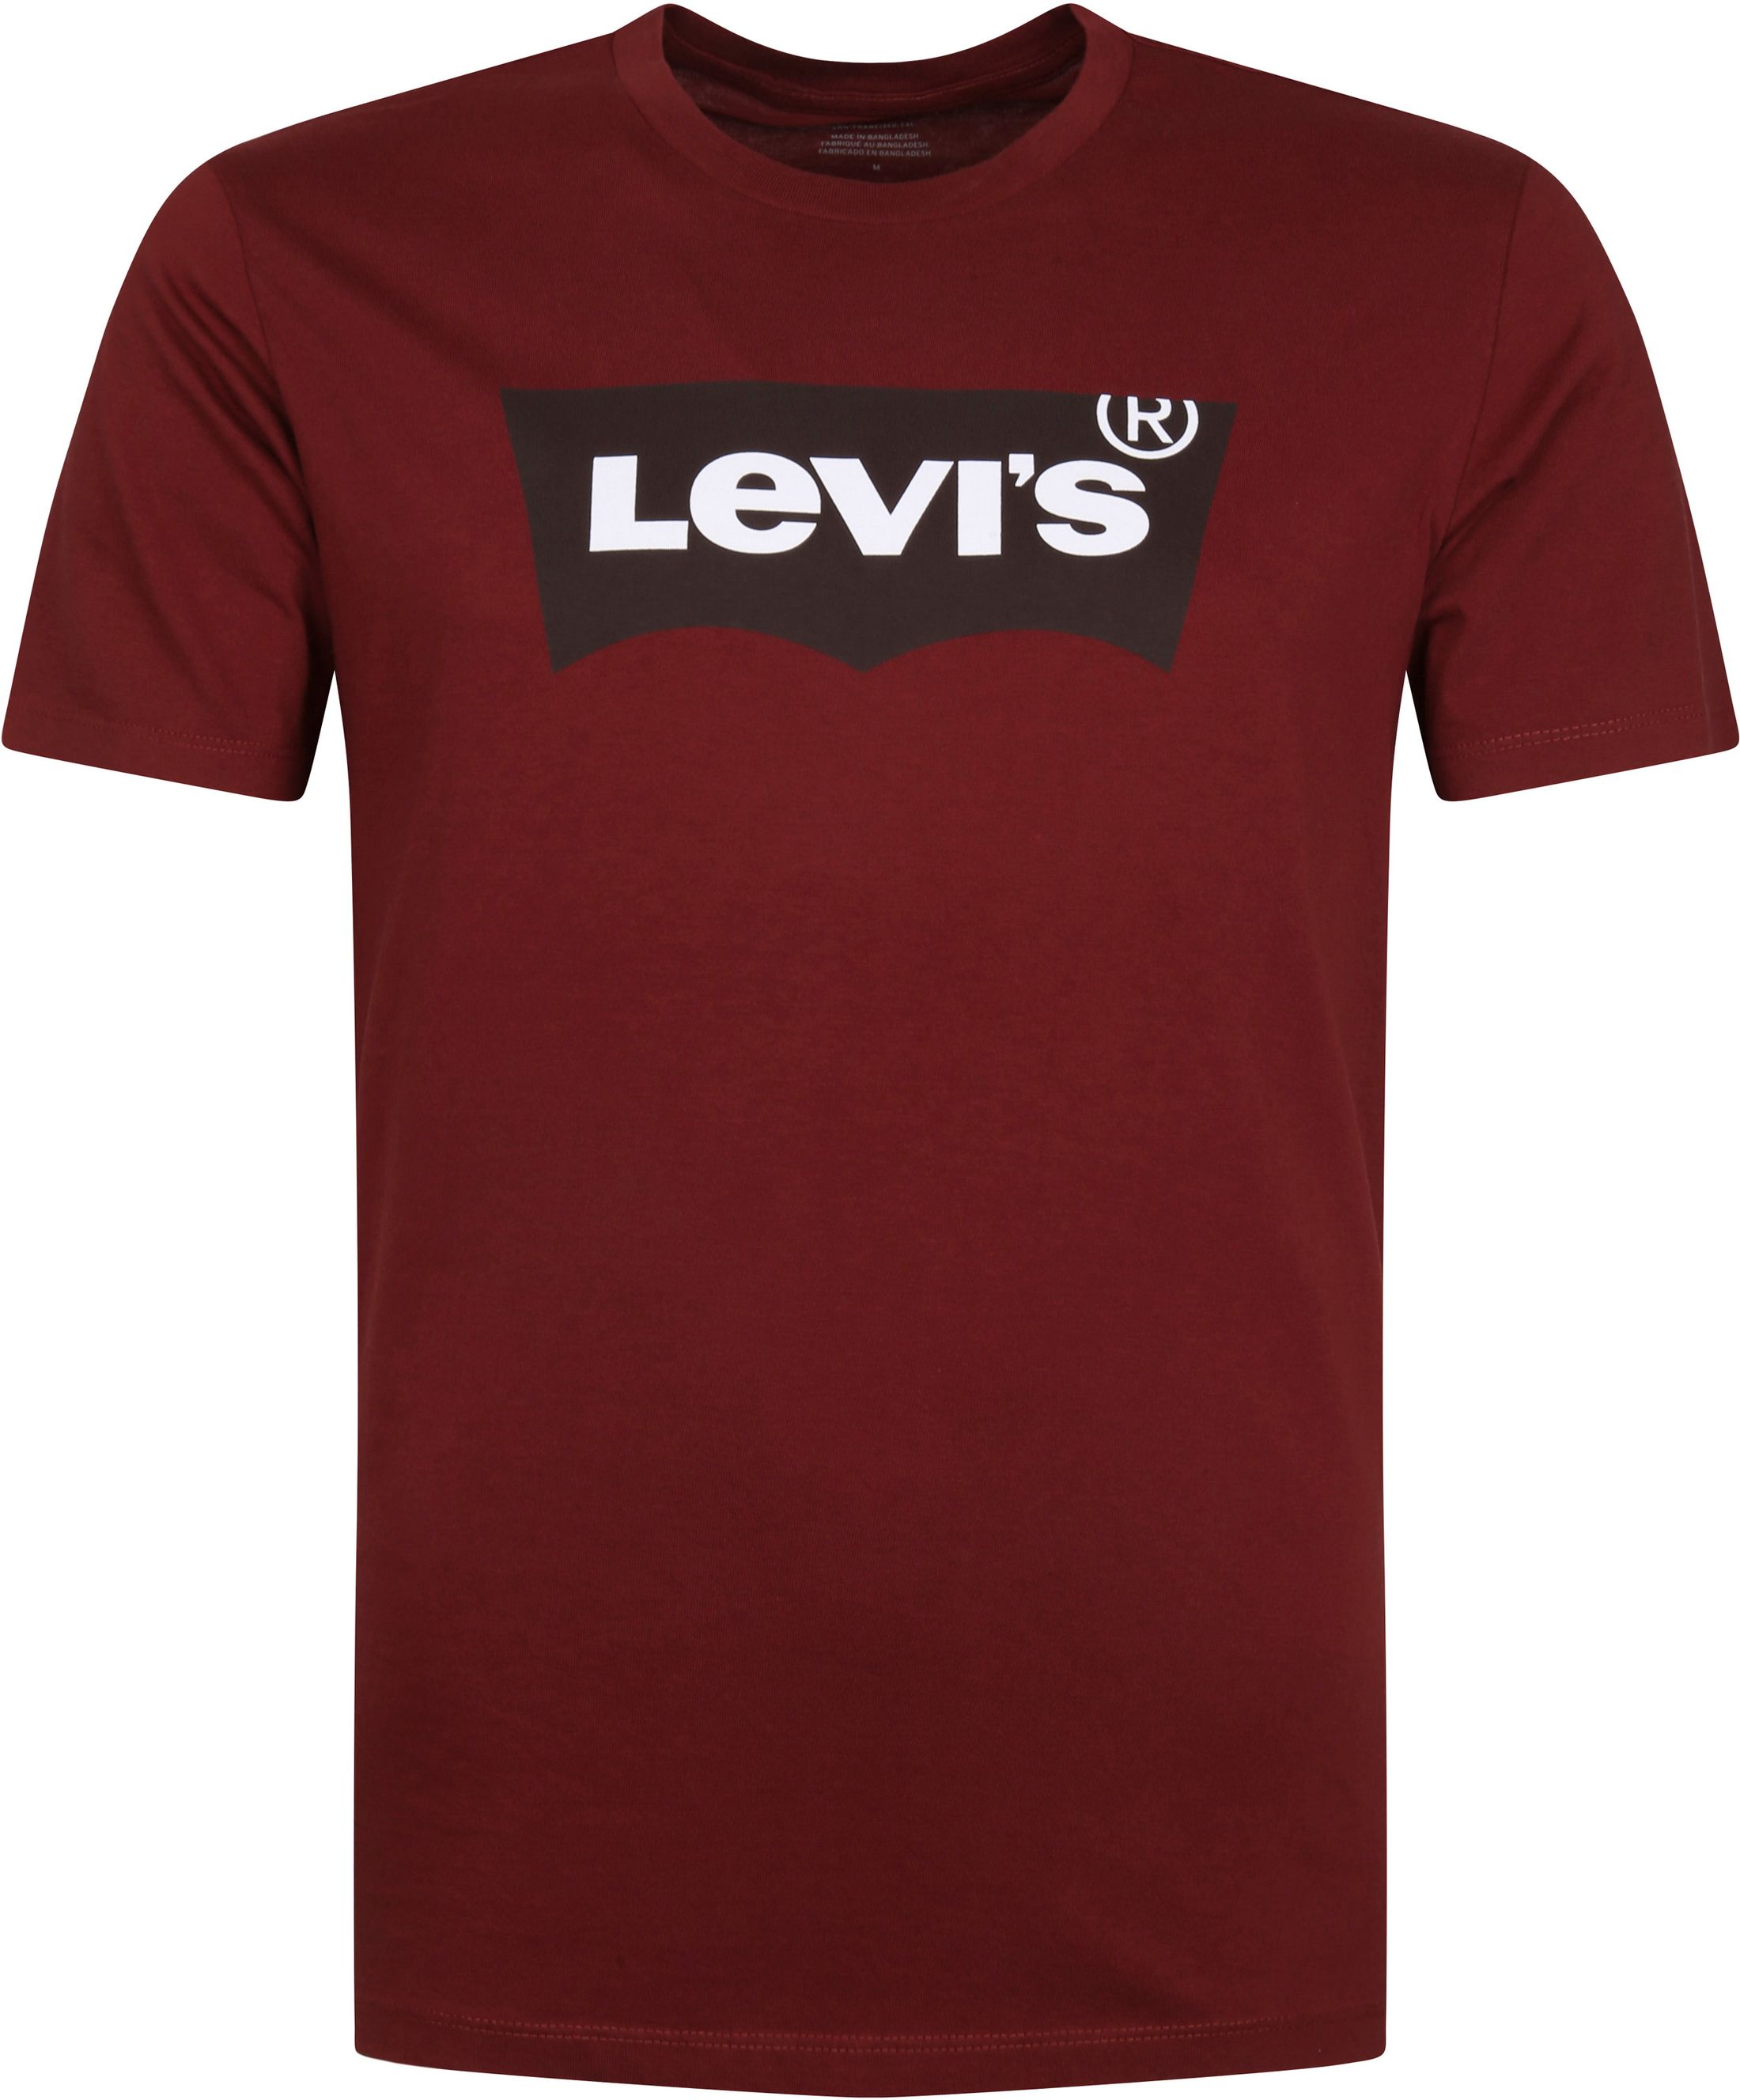 Levi's T Shirt Graphic Logo Bordeaux Burgundy Red size L